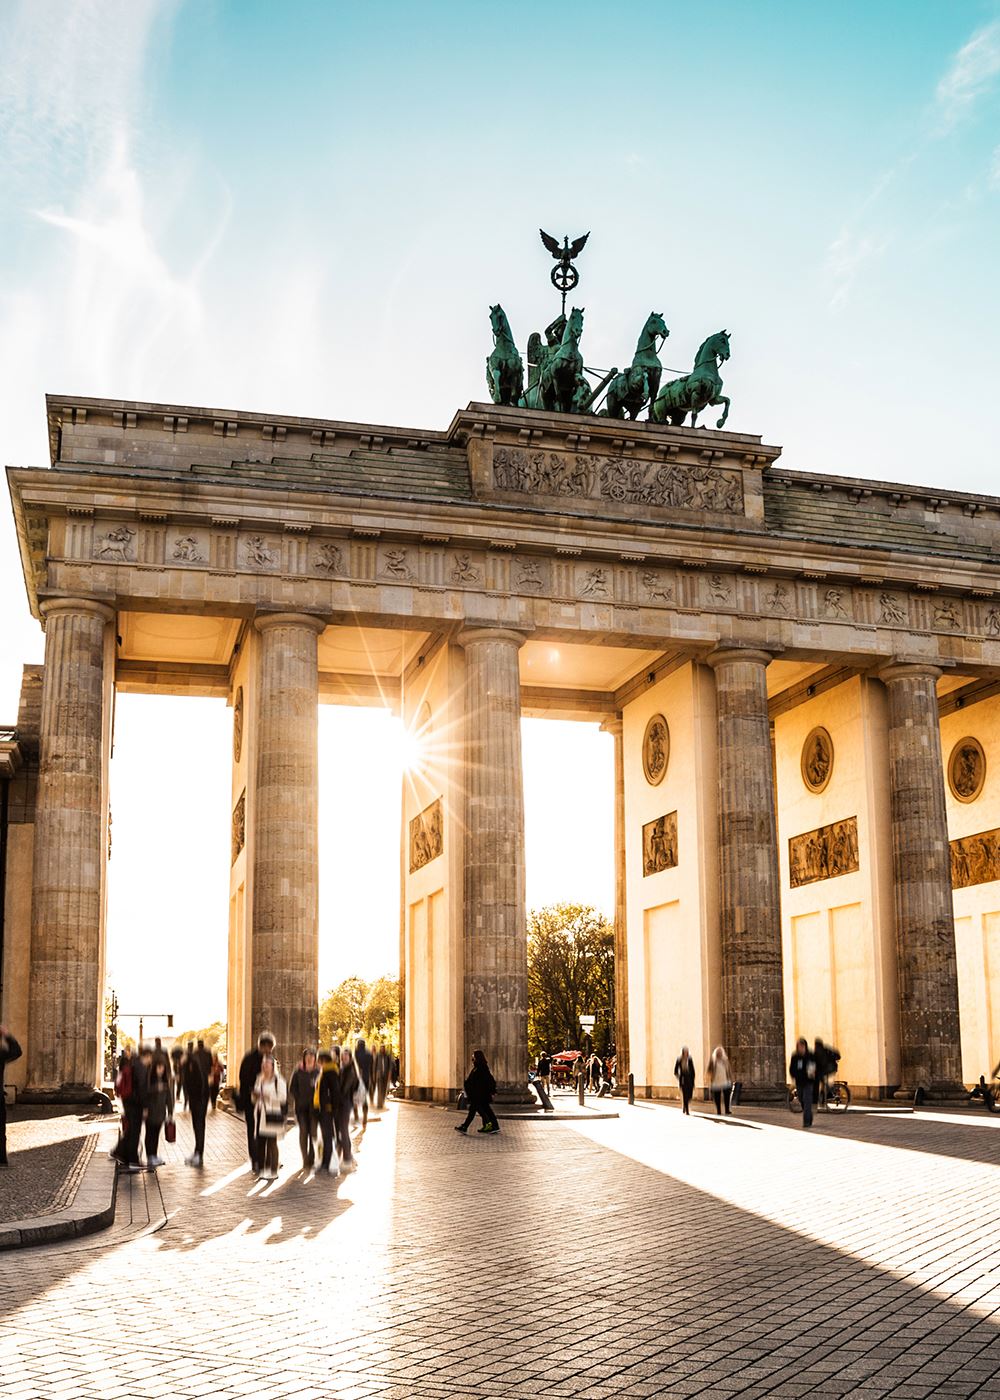 alt="Berlin Brandenburger Tor"